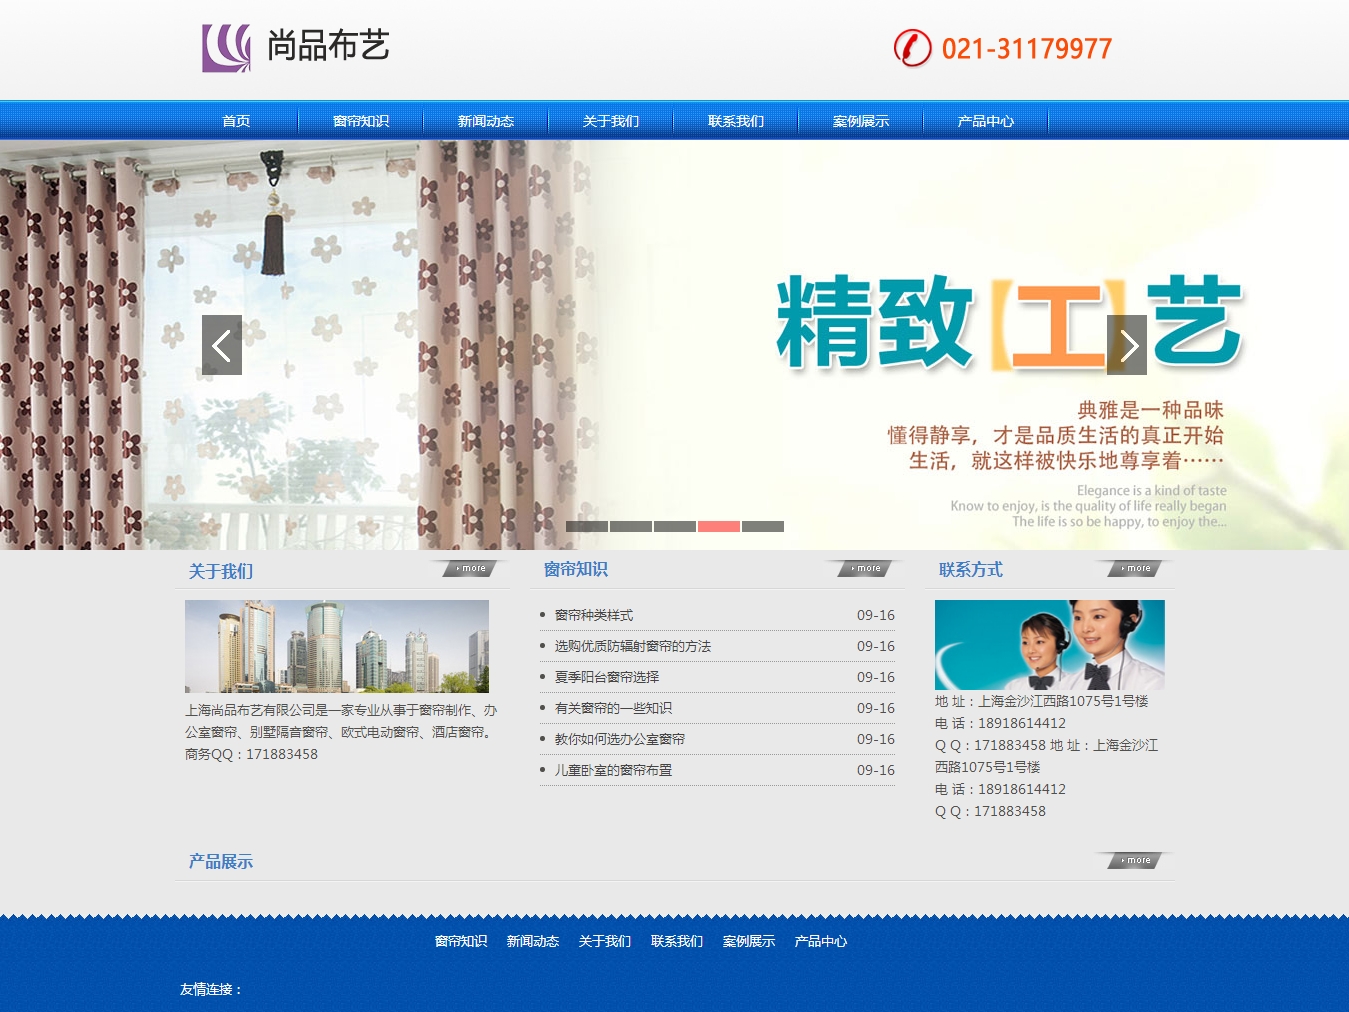 上海尚品布艺有限公司网站制作案例